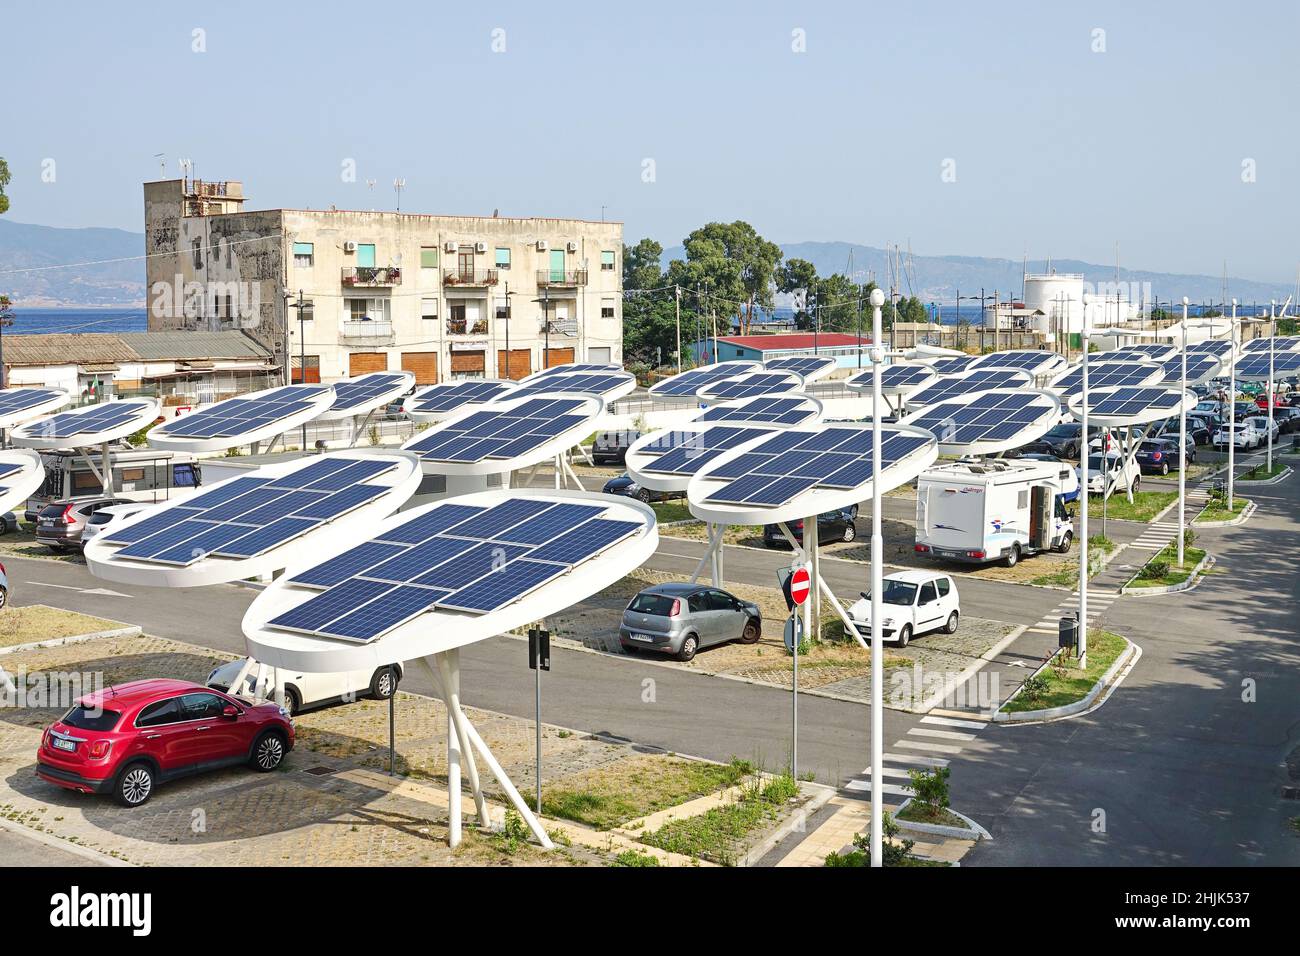 Sonnenkollektoren auf einem Parkplatz. Unternehmen installieren erneuerbare Energiequellen, um ihre CO2-Bilanz zu reduzieren. Reggio Calabria, Italien - Juli 2021 Stockfoto